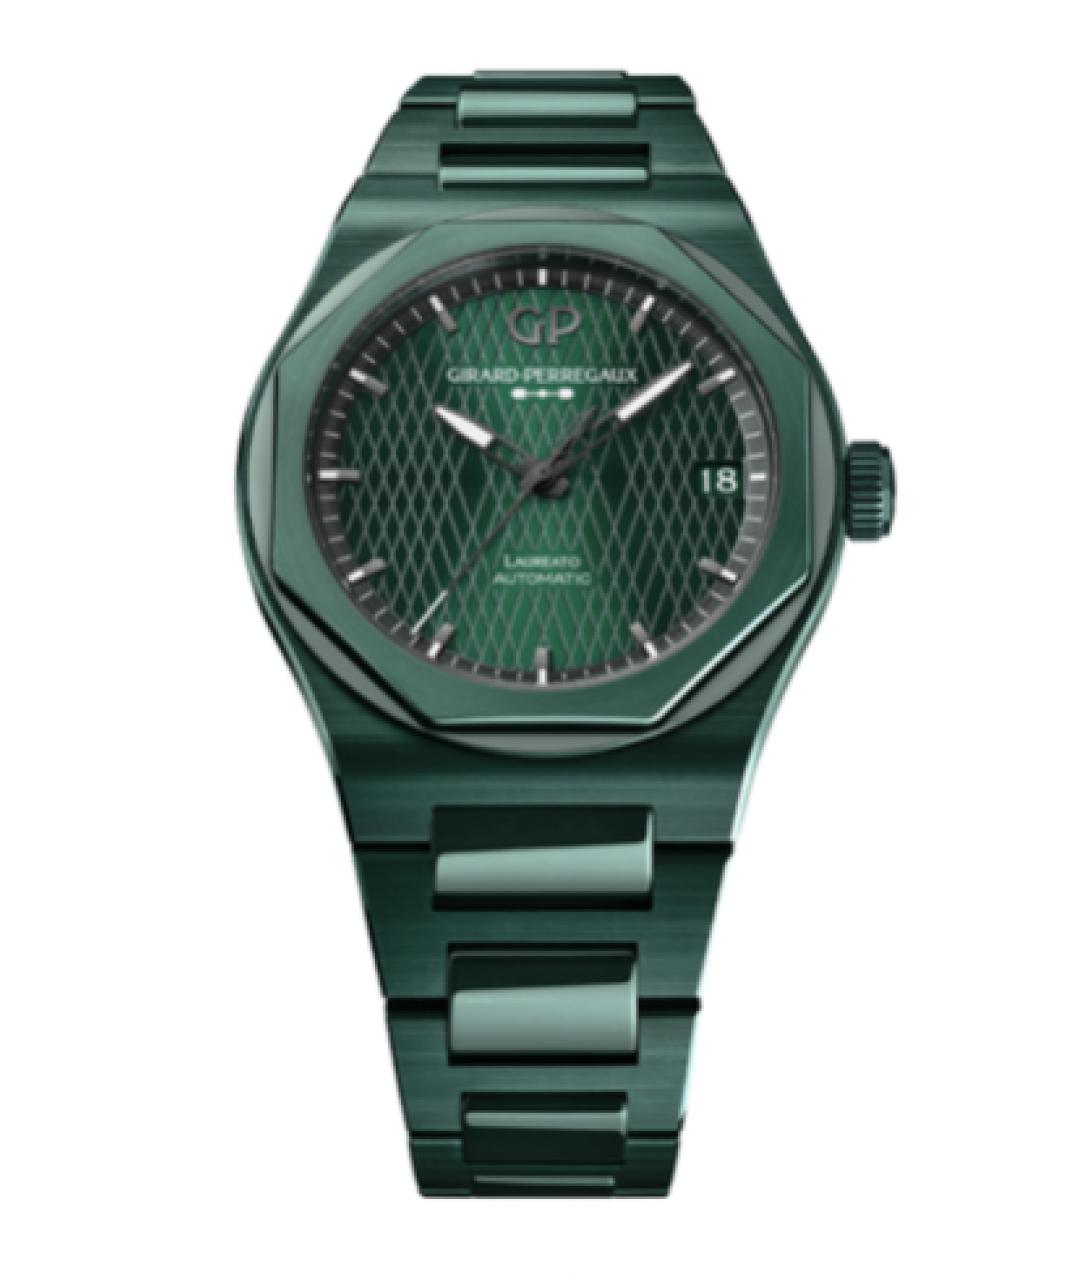 GIRARD PERREGAUX Зеленые керамические часы, фото 1